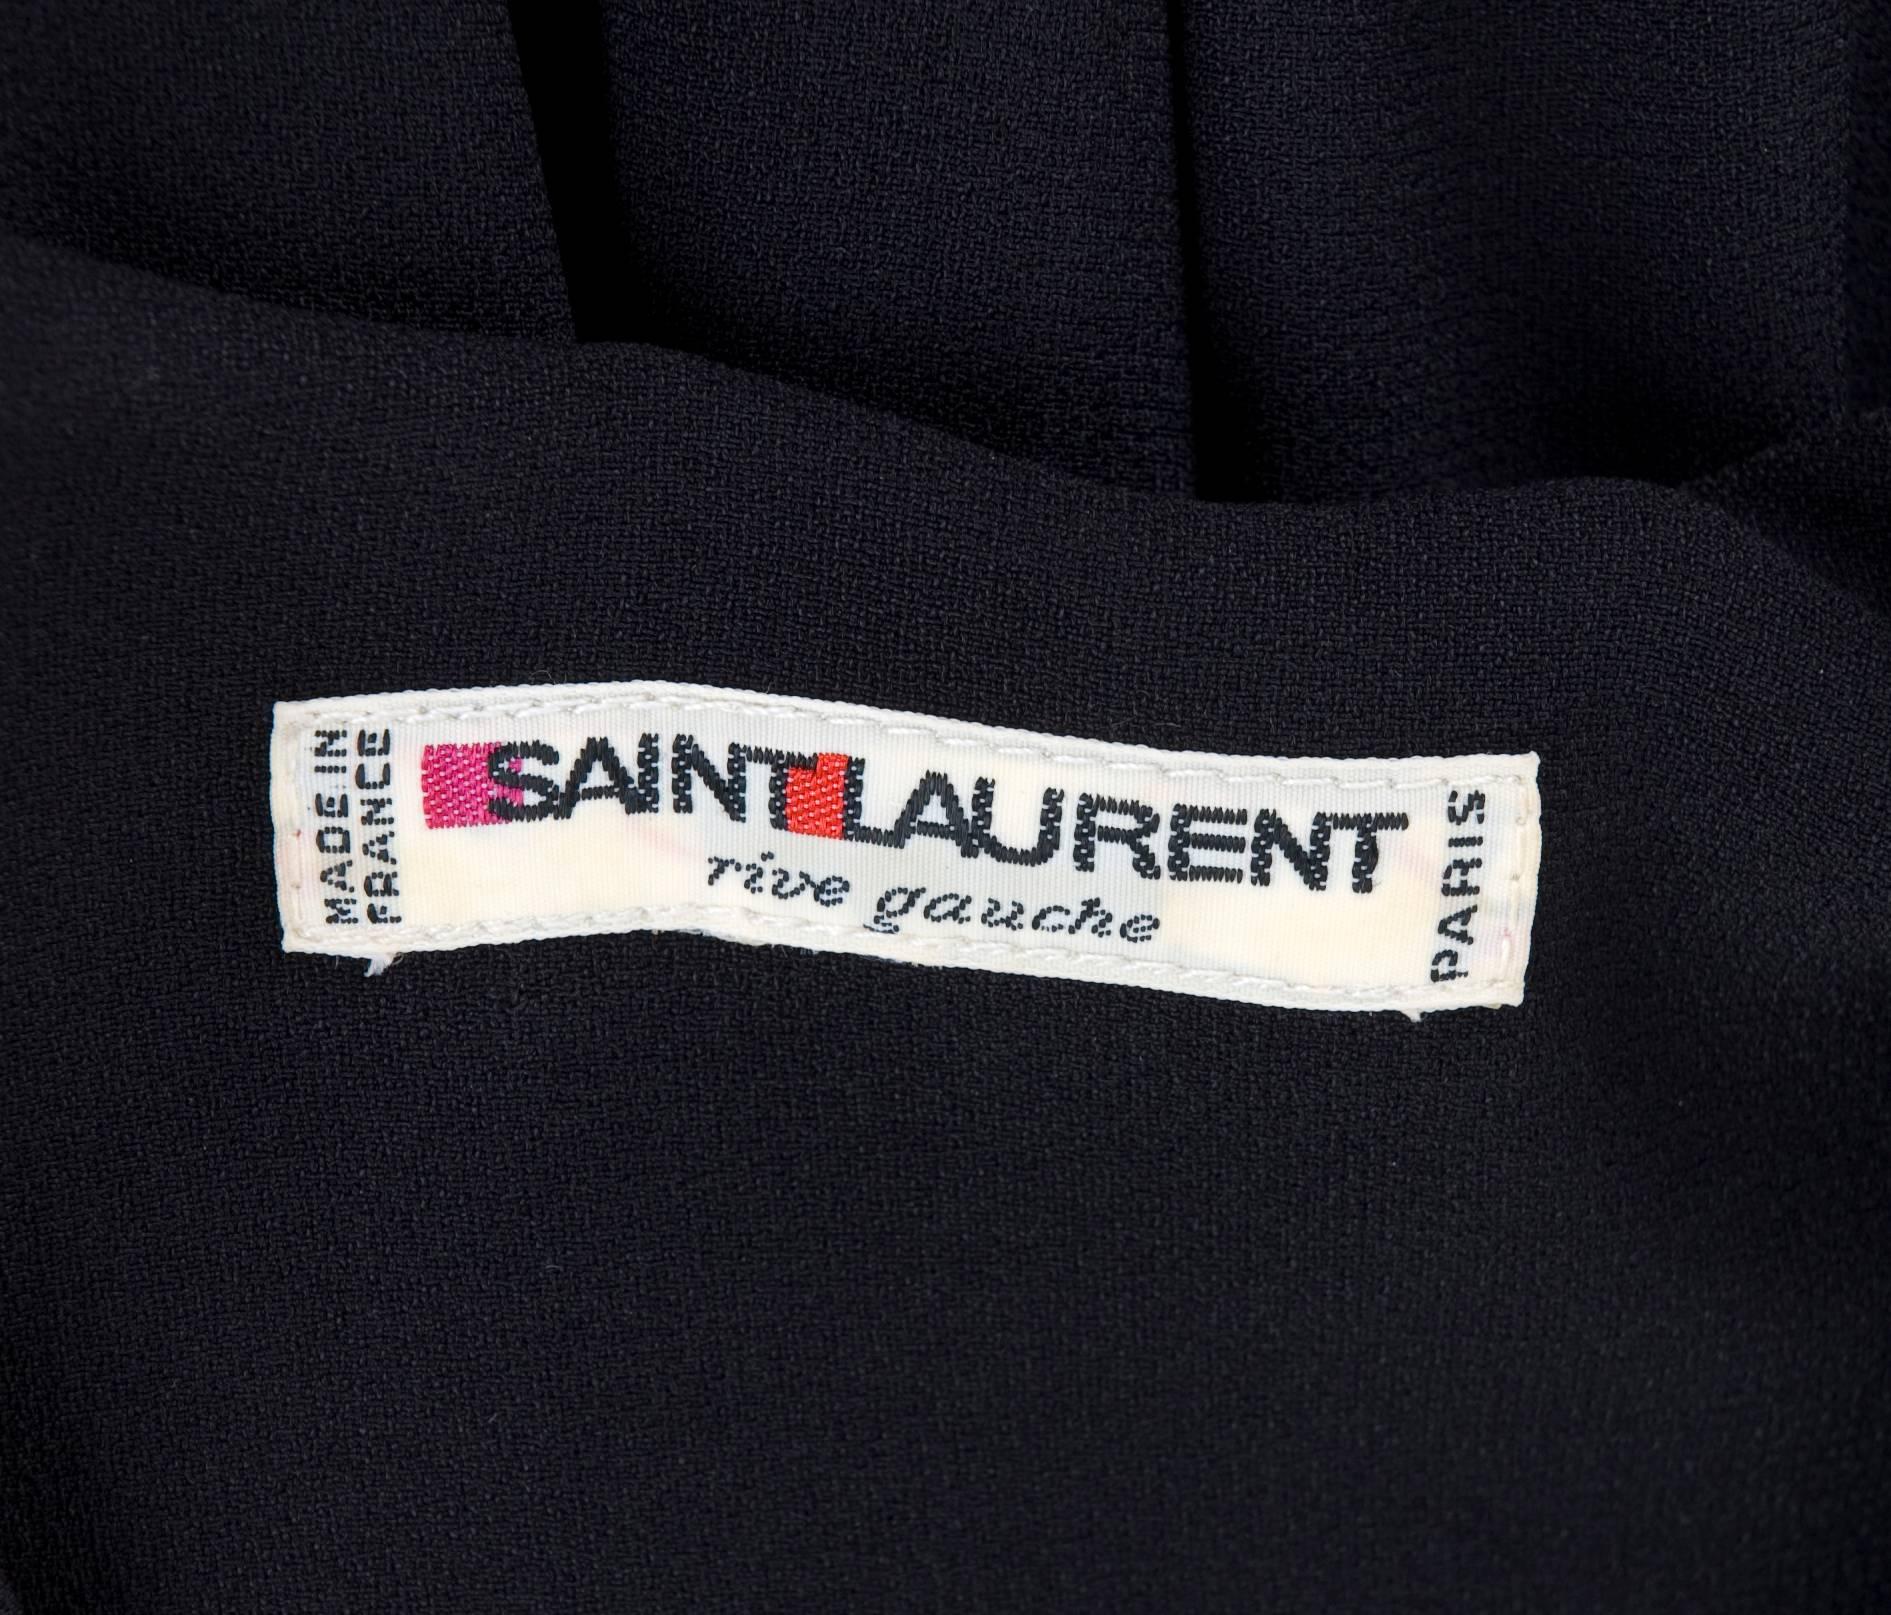 1983 Vintage Yves Saint Laurent Black Black Smocked and Sequined Cocktail Dress For Sale 5